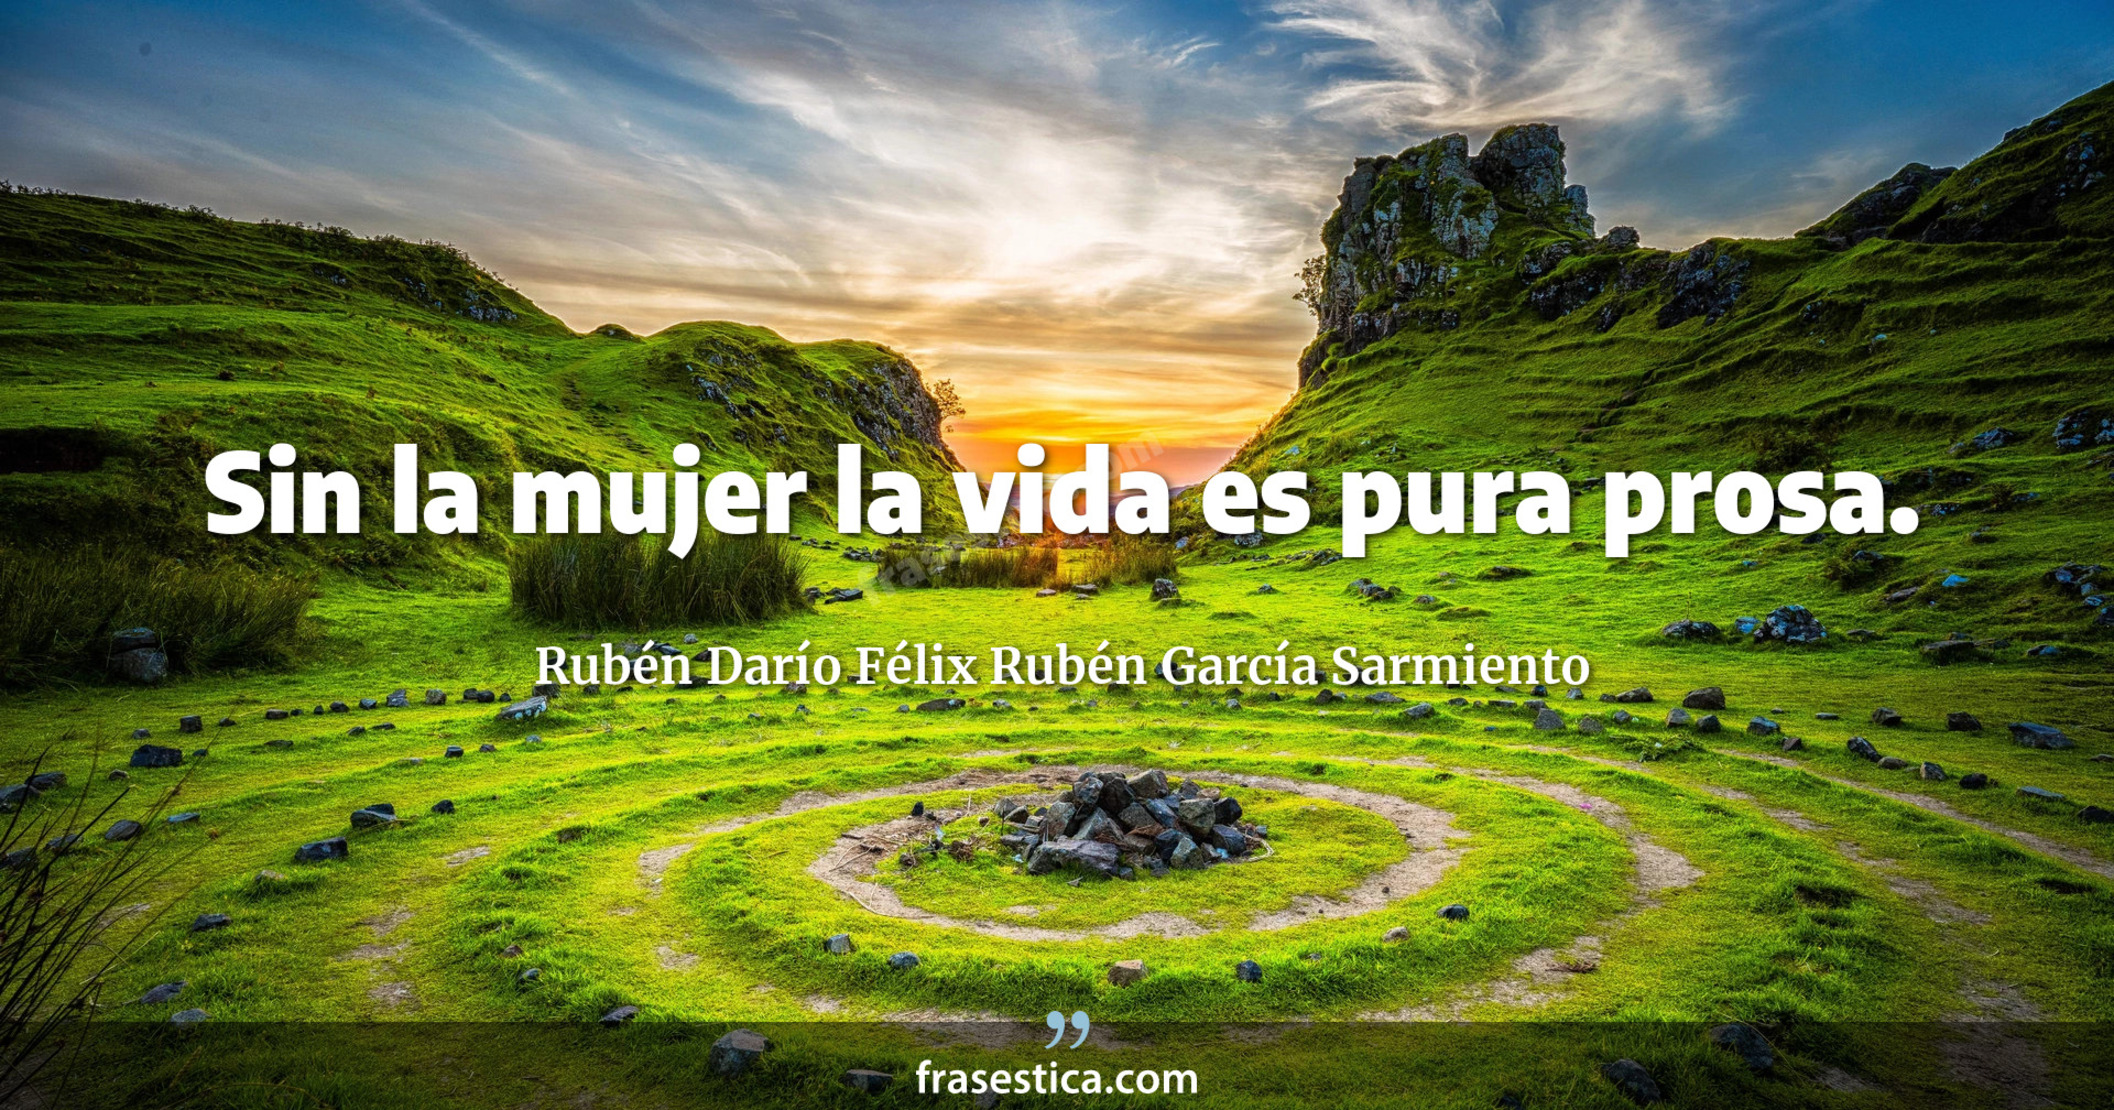 Sin la mujer la vida es pura prosa. - Rubén Darío Félix Rubén García Sarmiento